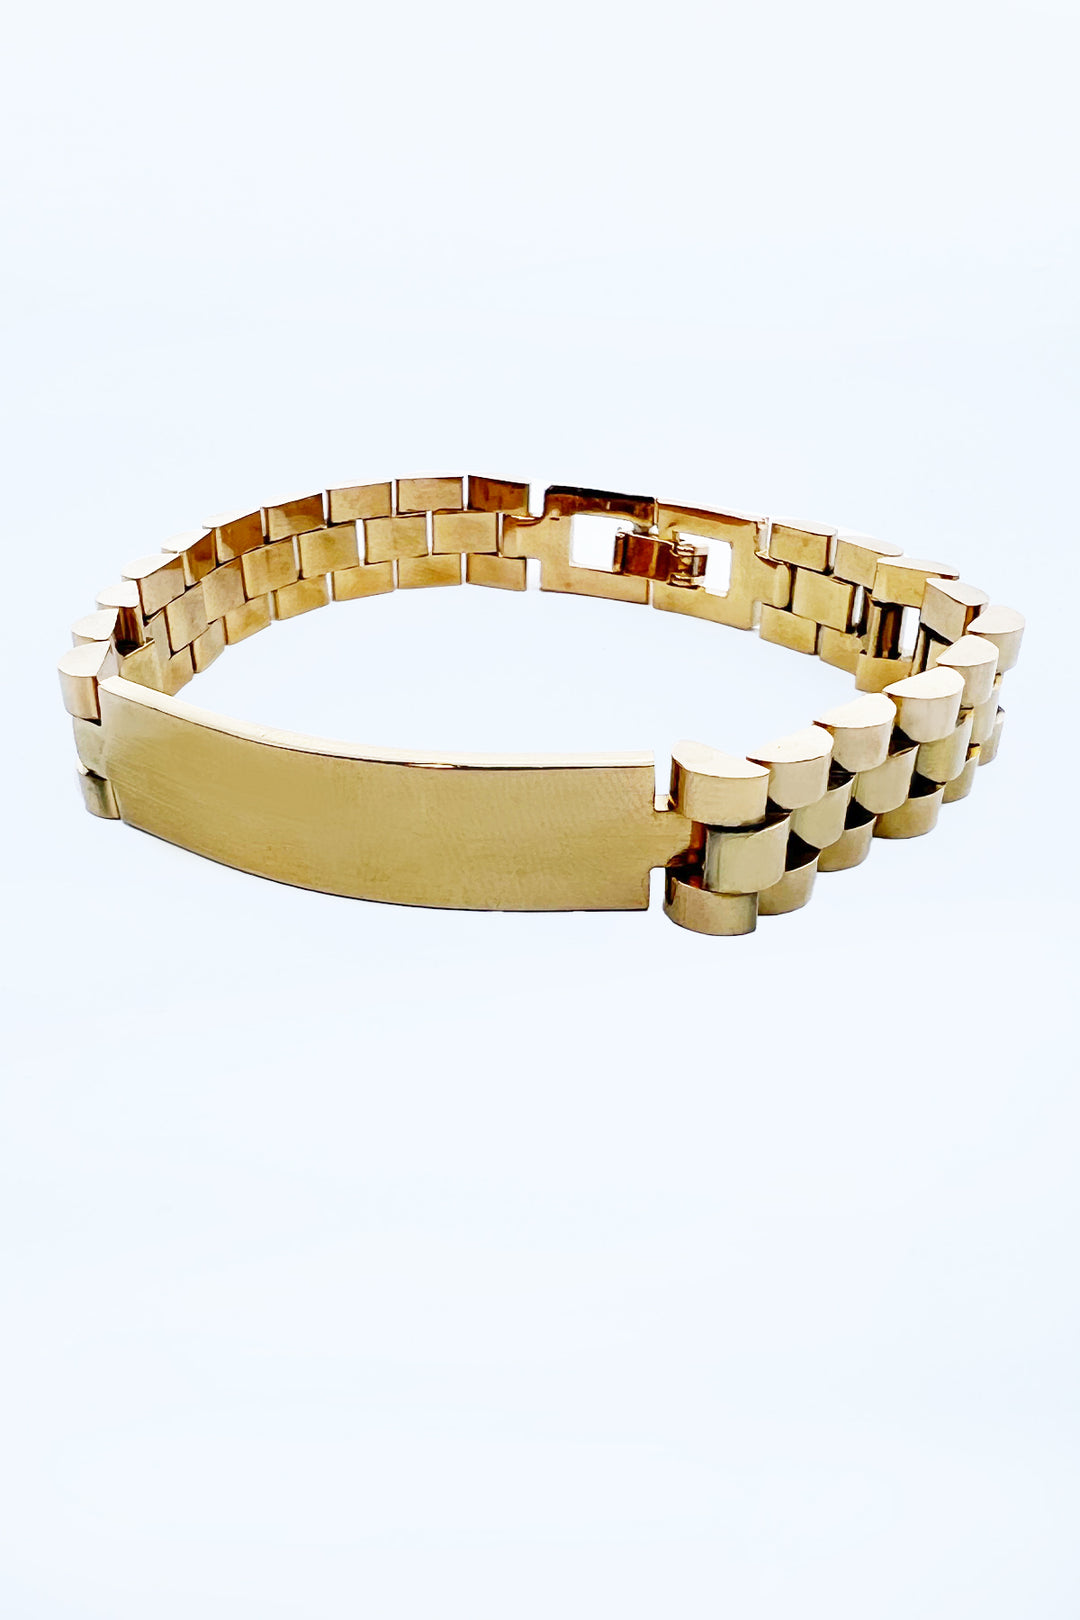 Stainless Golden Men's Bracelet - S23 - MJW0046